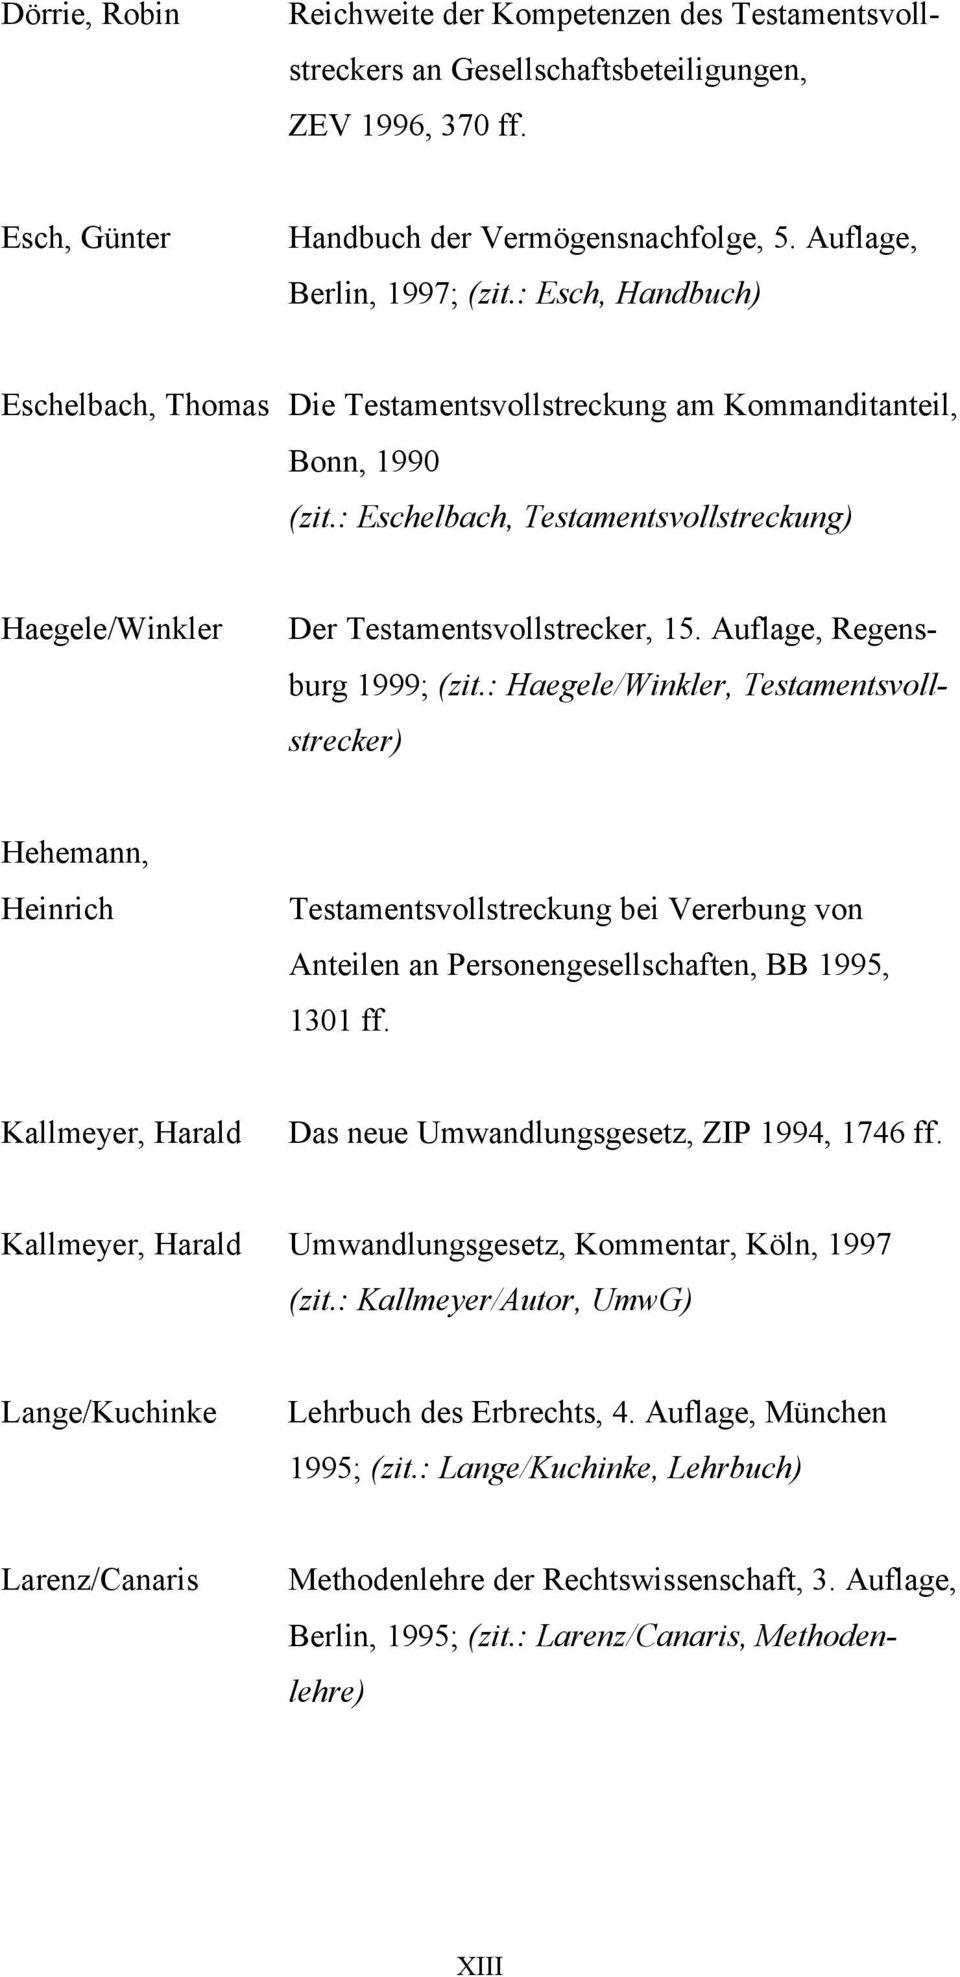 Auflage, Regensburg 1999; (zit.: Haegele/Winkler, Testamentsvollstrecker) Hehemann, Heinrich Testamentsvollstreckung bei Vererbung von Anteilen an Personengesellschaften, BB 1995, 1301 ff.